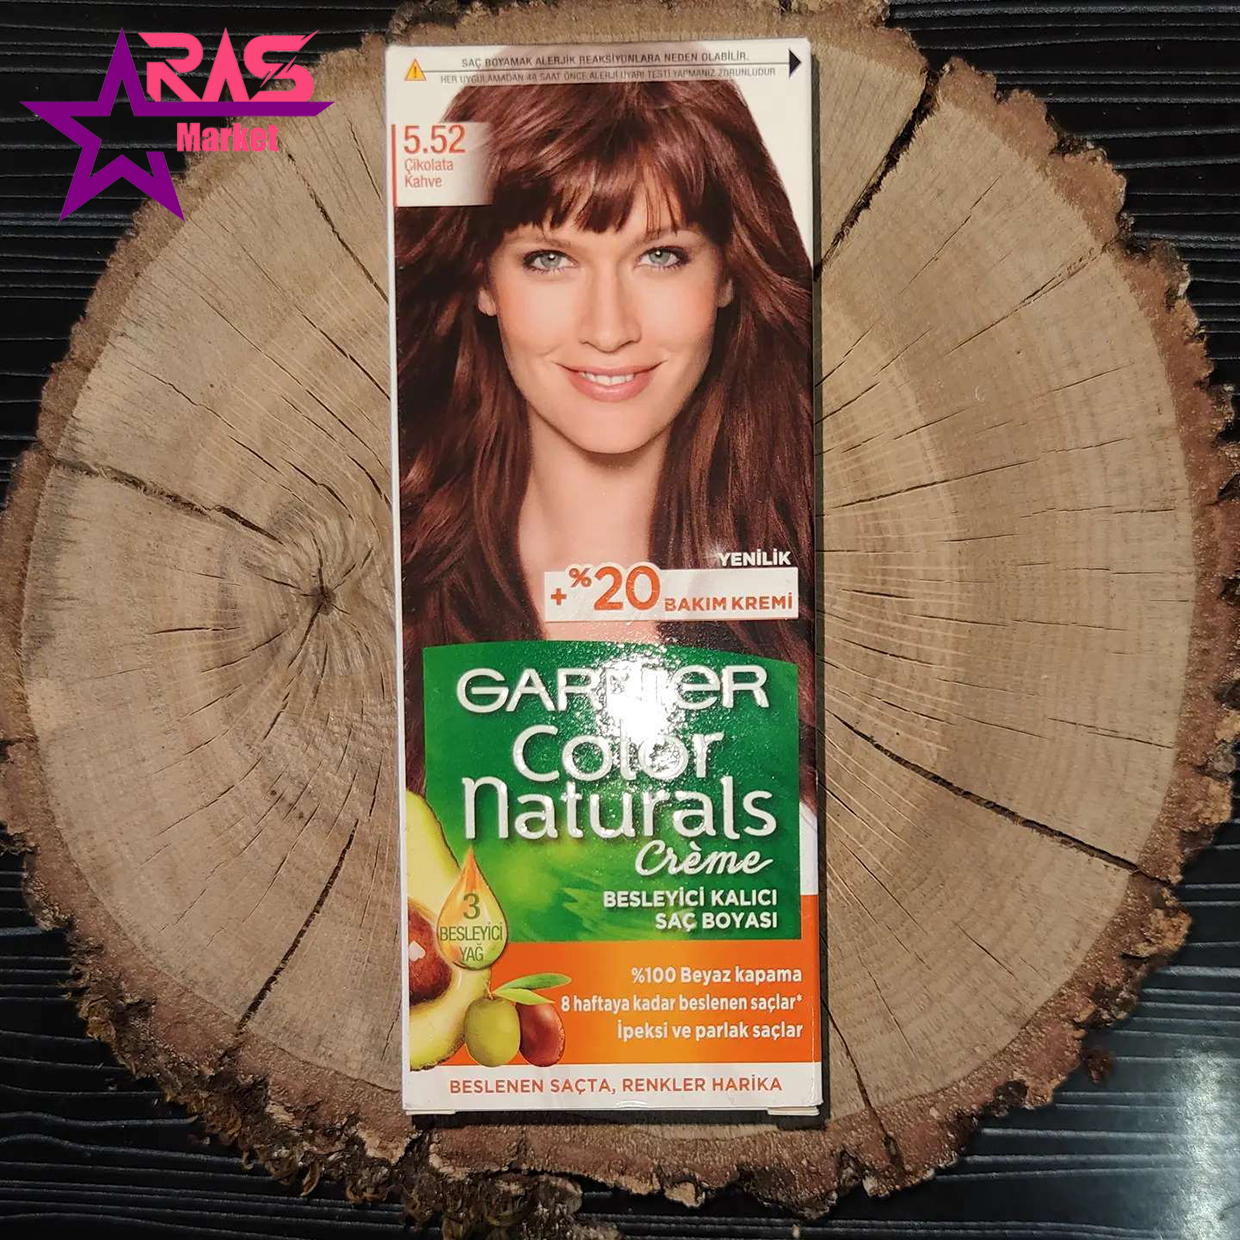 کیت رنگ مو گارنیر سری Color Naturals شماره 5.52 ، خرید اینترنتی محصولات شوینده و بهداشتی ، ارس مارکت